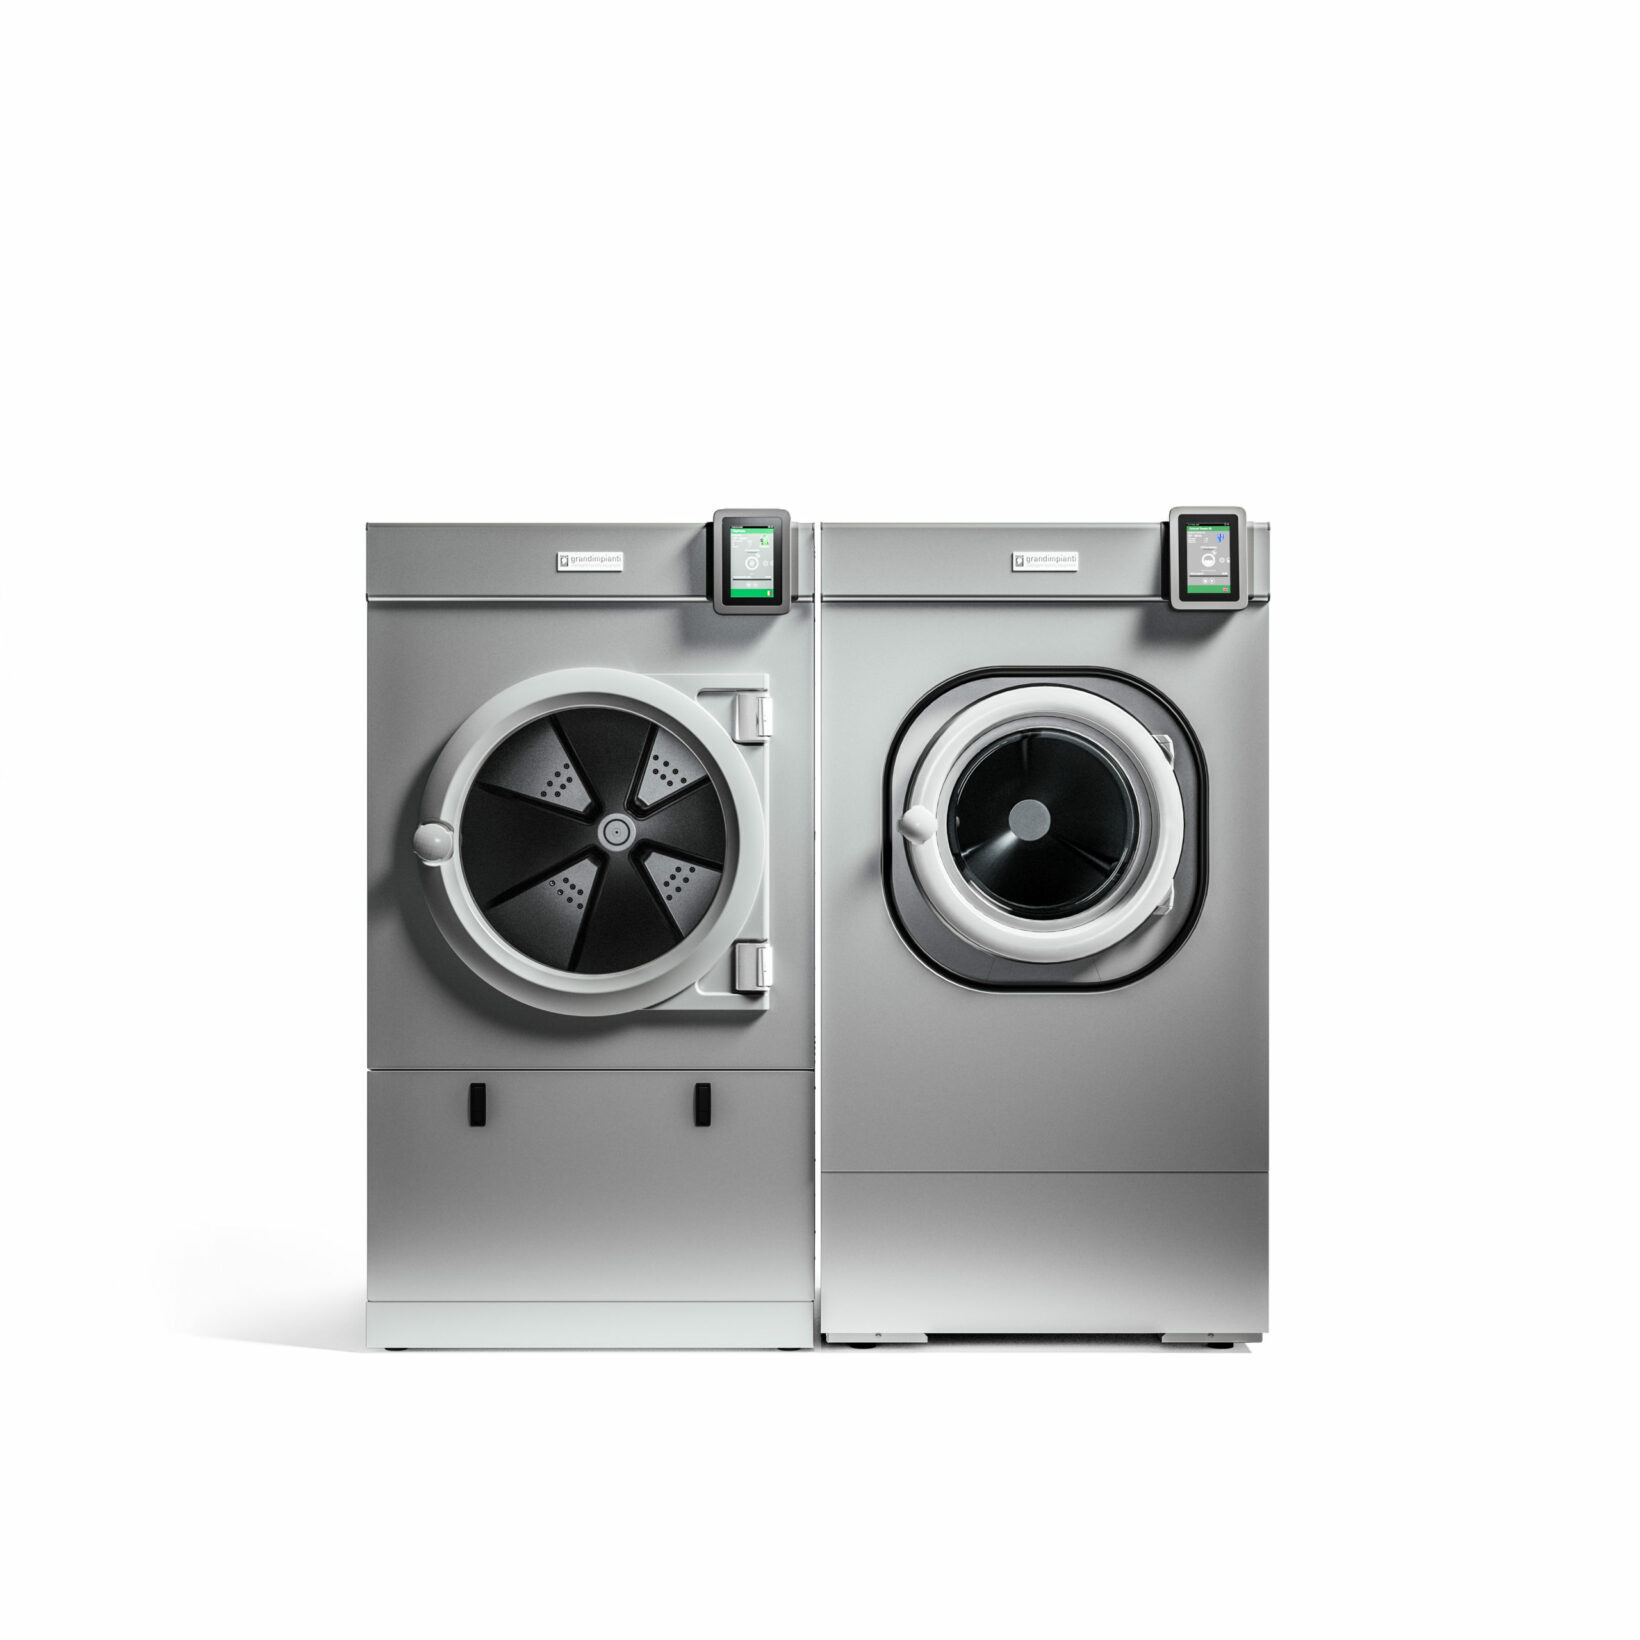 Tumble Dryers-Integrity Mechanical